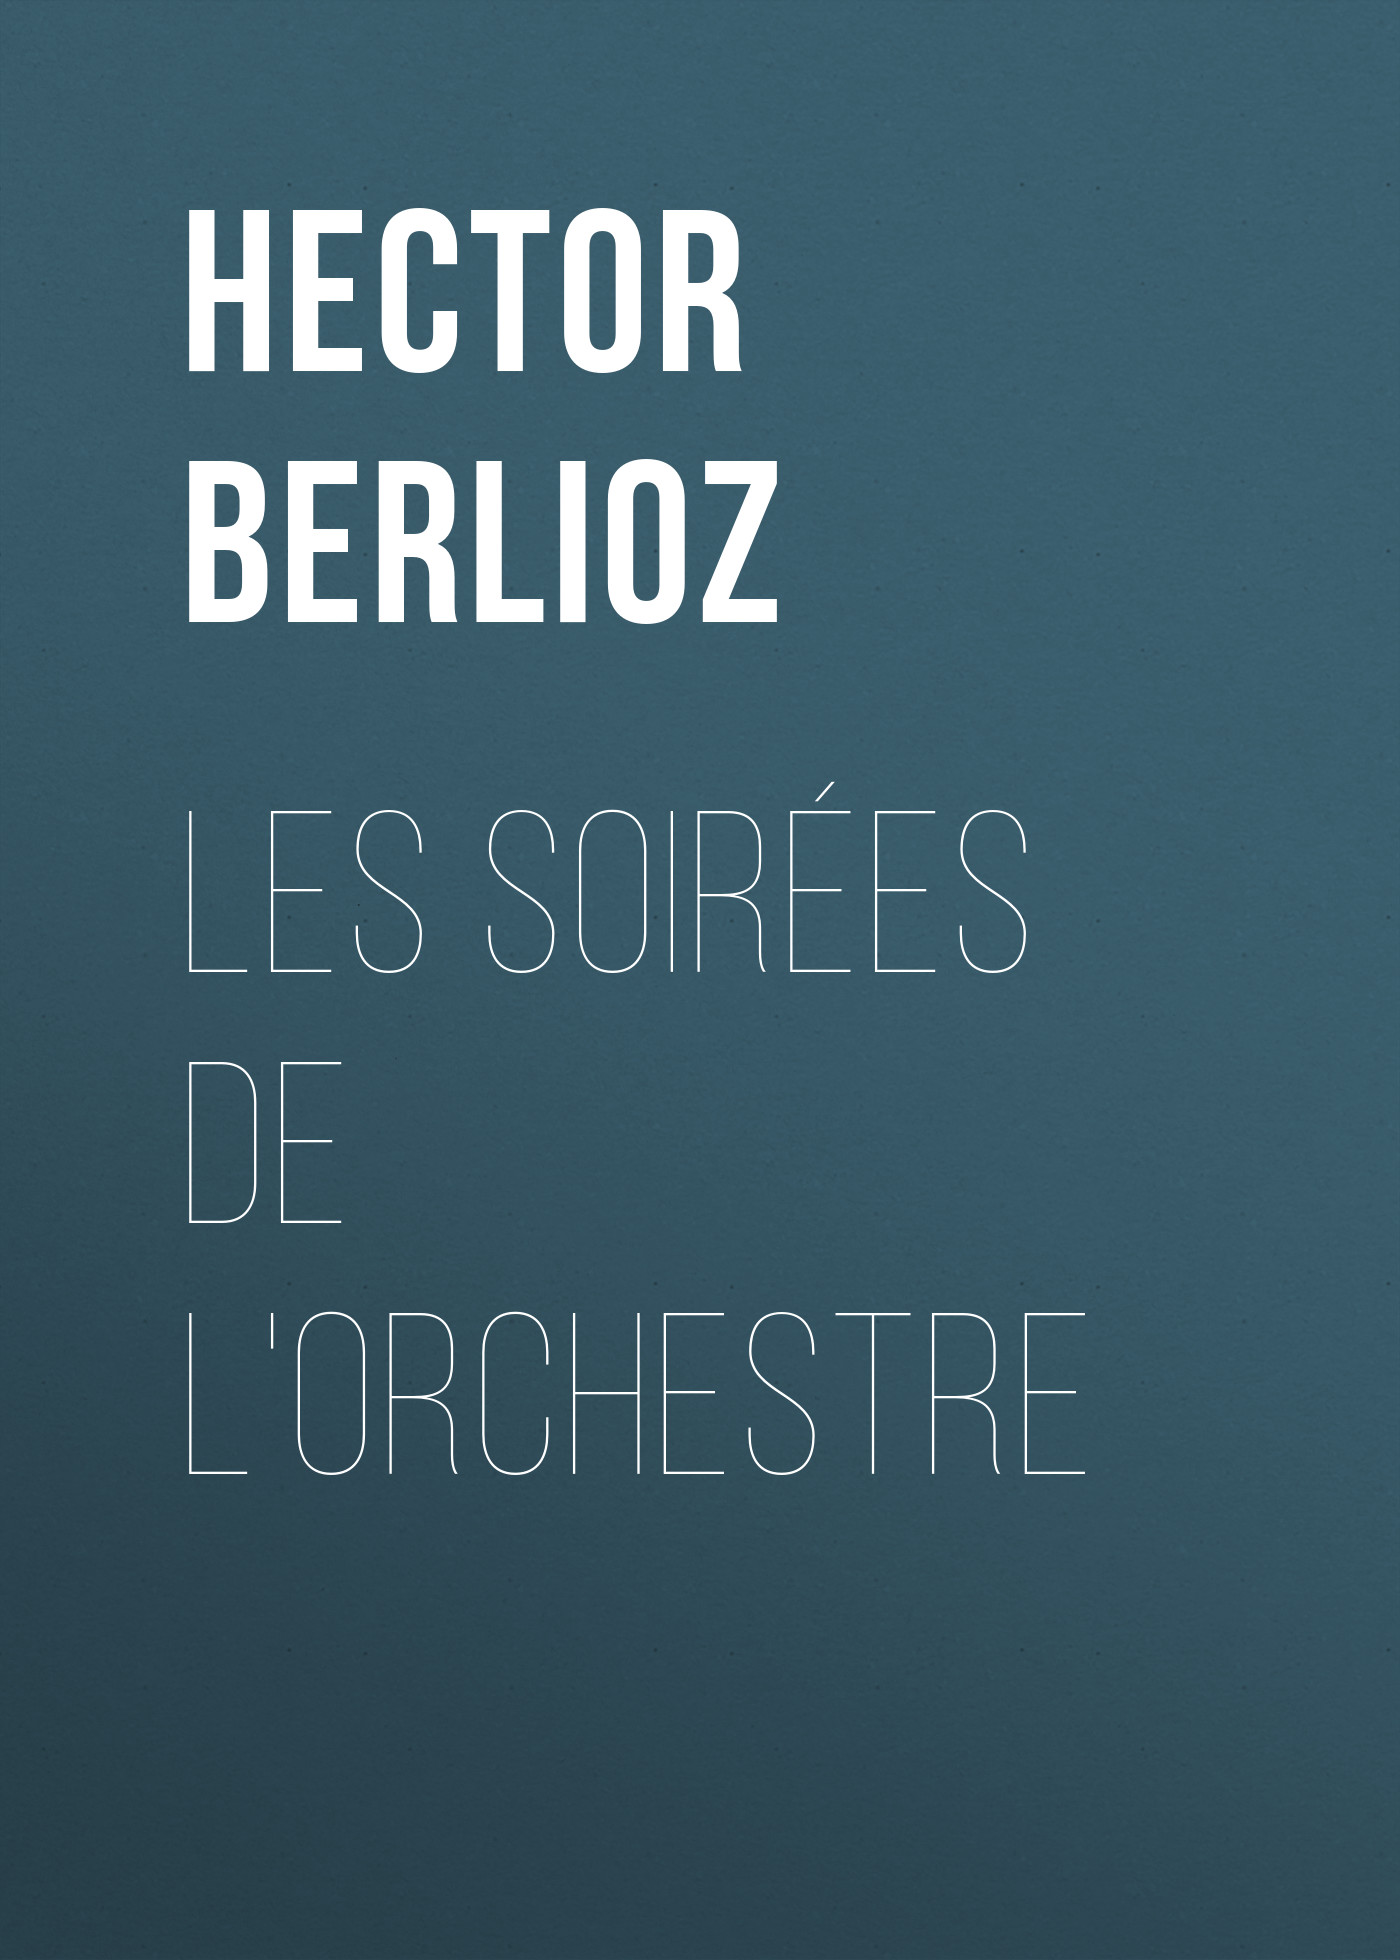 Книга Les soirées de l'orchestre из серии , созданная Hector Berlioz, может относится к жанру Зарубежная старинная литература, Зарубежная классика, Историческая литература. Стоимость электронной книги Les soirées de l'orchestre с идентификатором 24178156 составляет 0.90 руб.